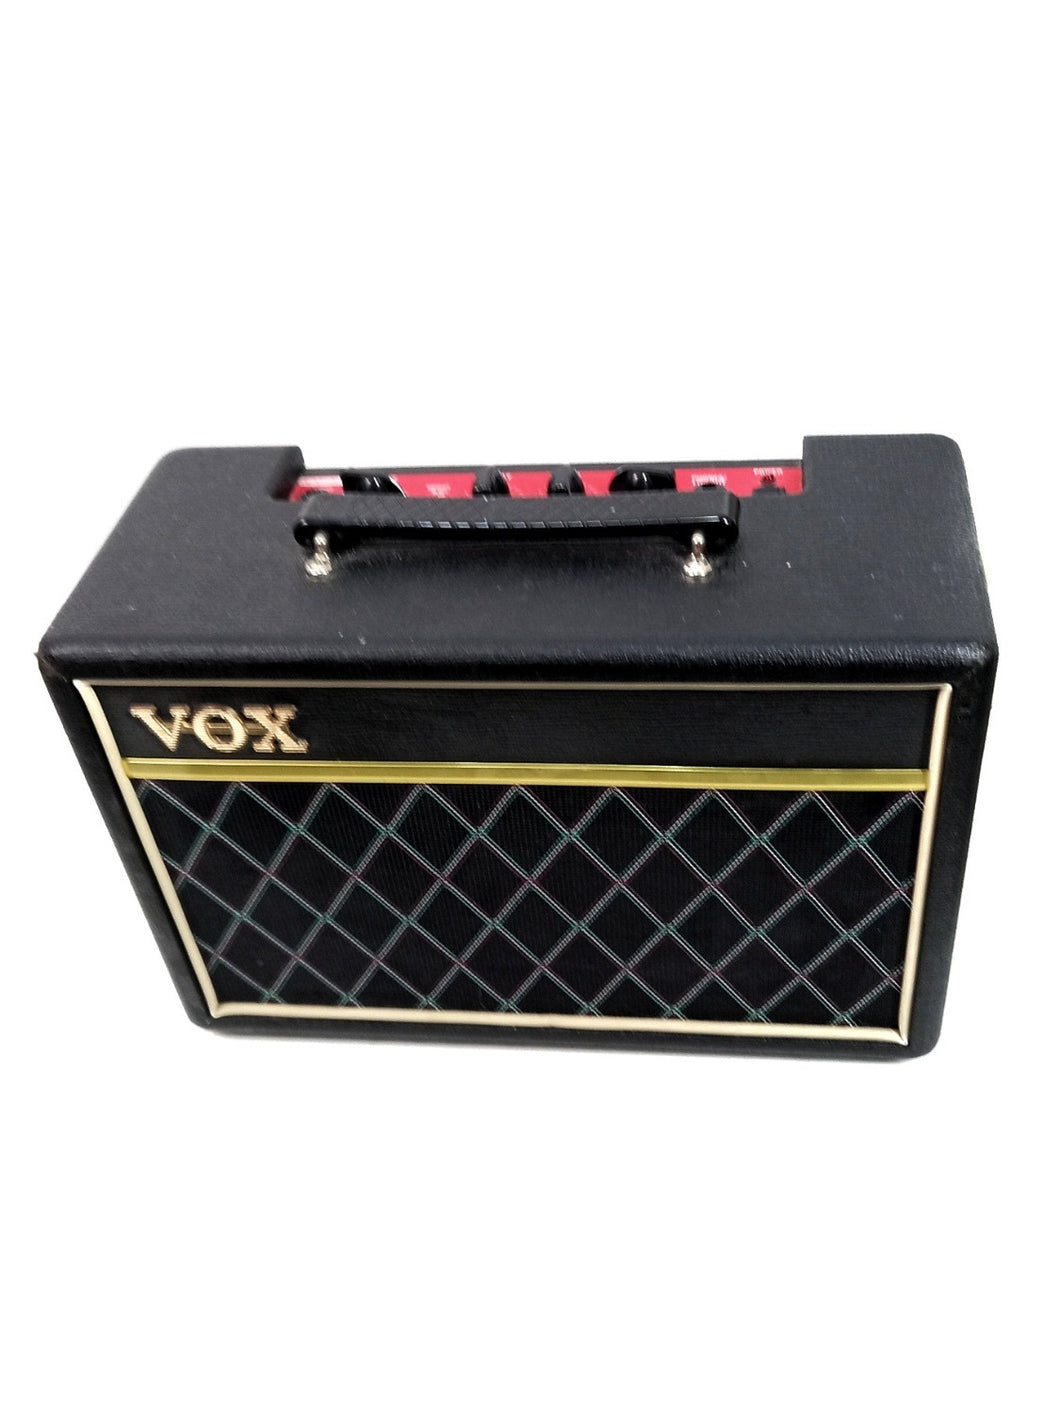 Amplificador de Bajo Vox PFB10